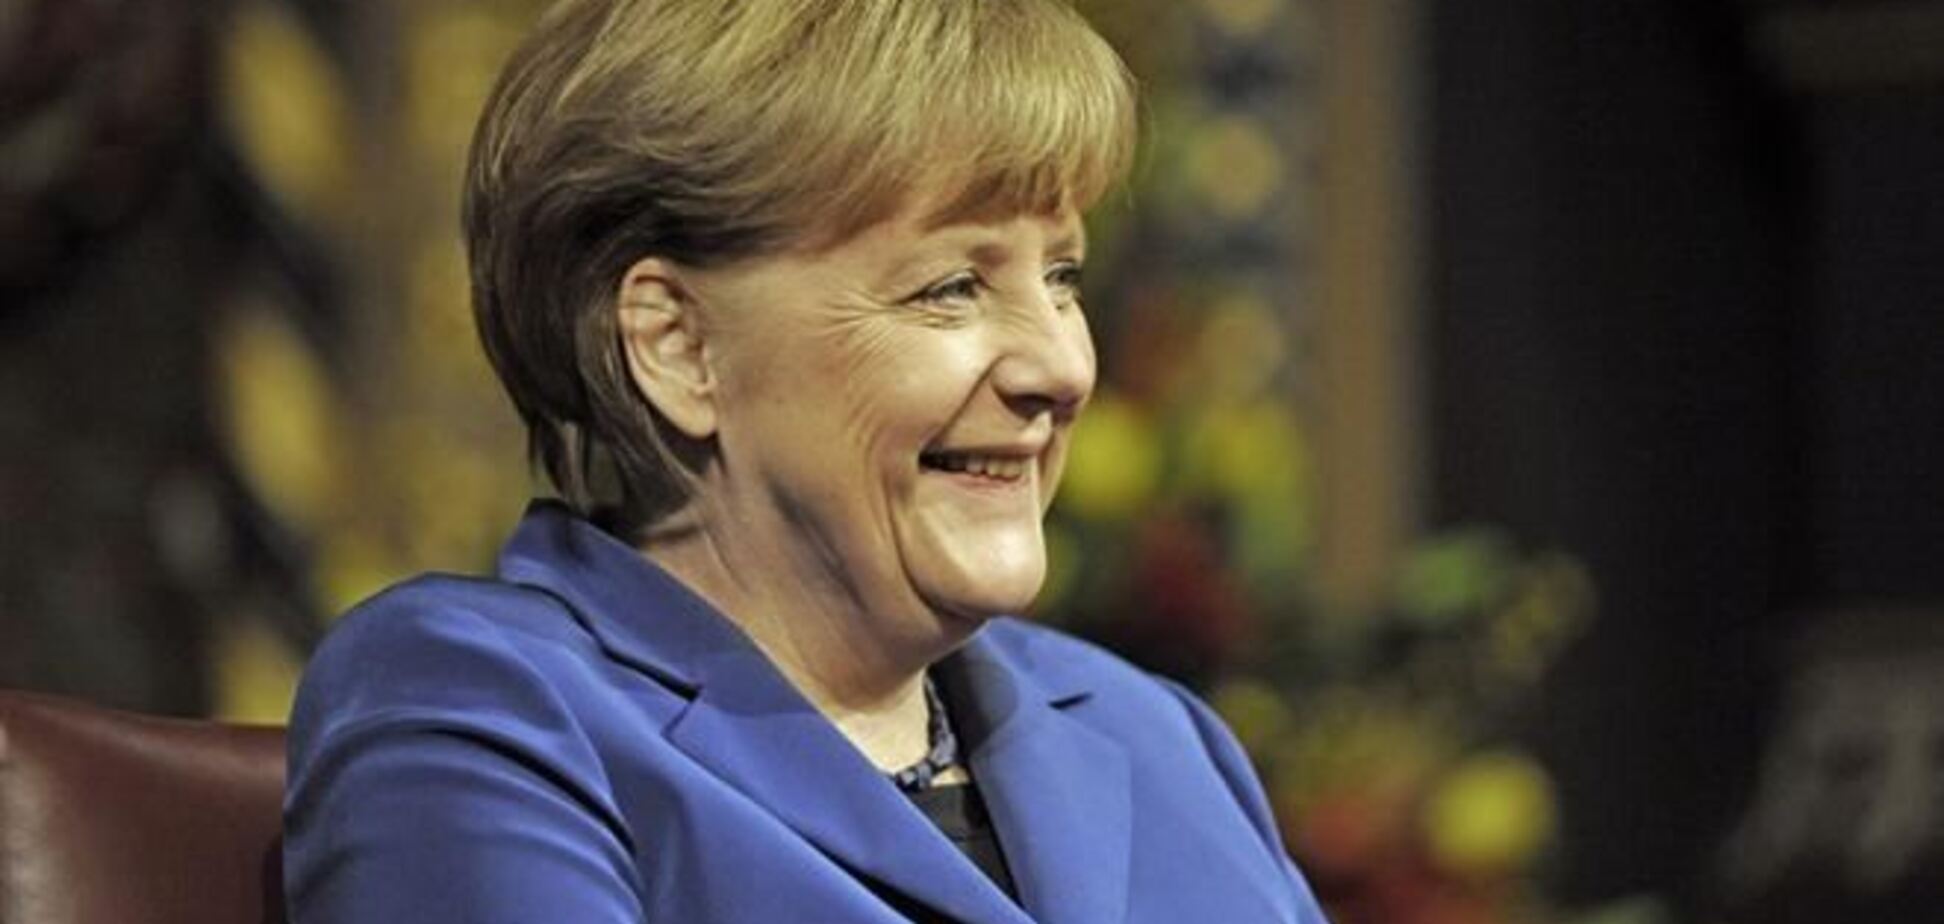 Меркель поздравила Яценюка с назначением, но отношение к Януковичу ФРГ не сформулировало  